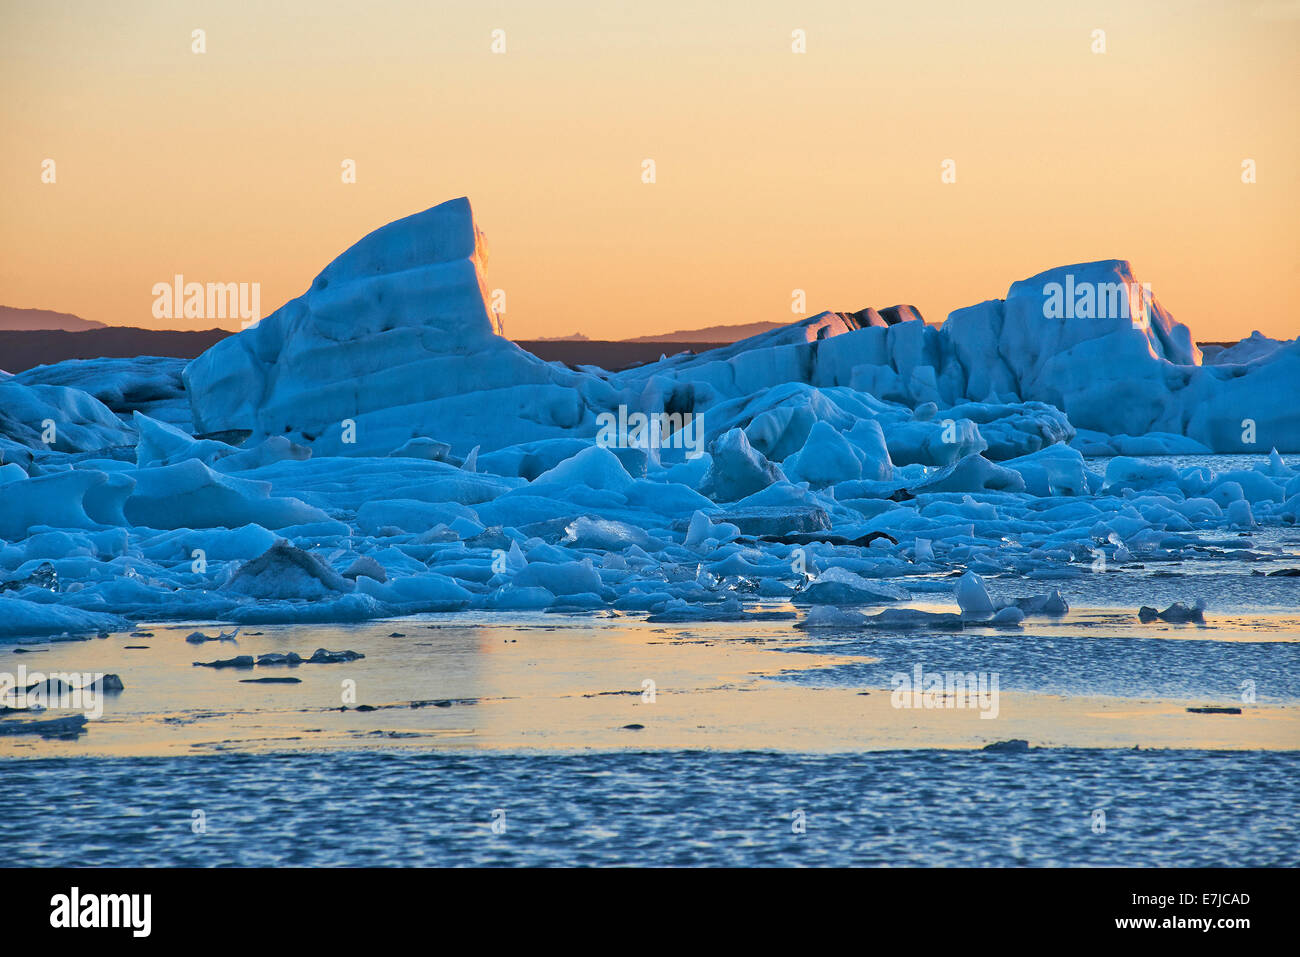 Ice, glacier, Iceland, Jökulsarlon, lake, reflections, Europe, holidays, travel, Stock Photo